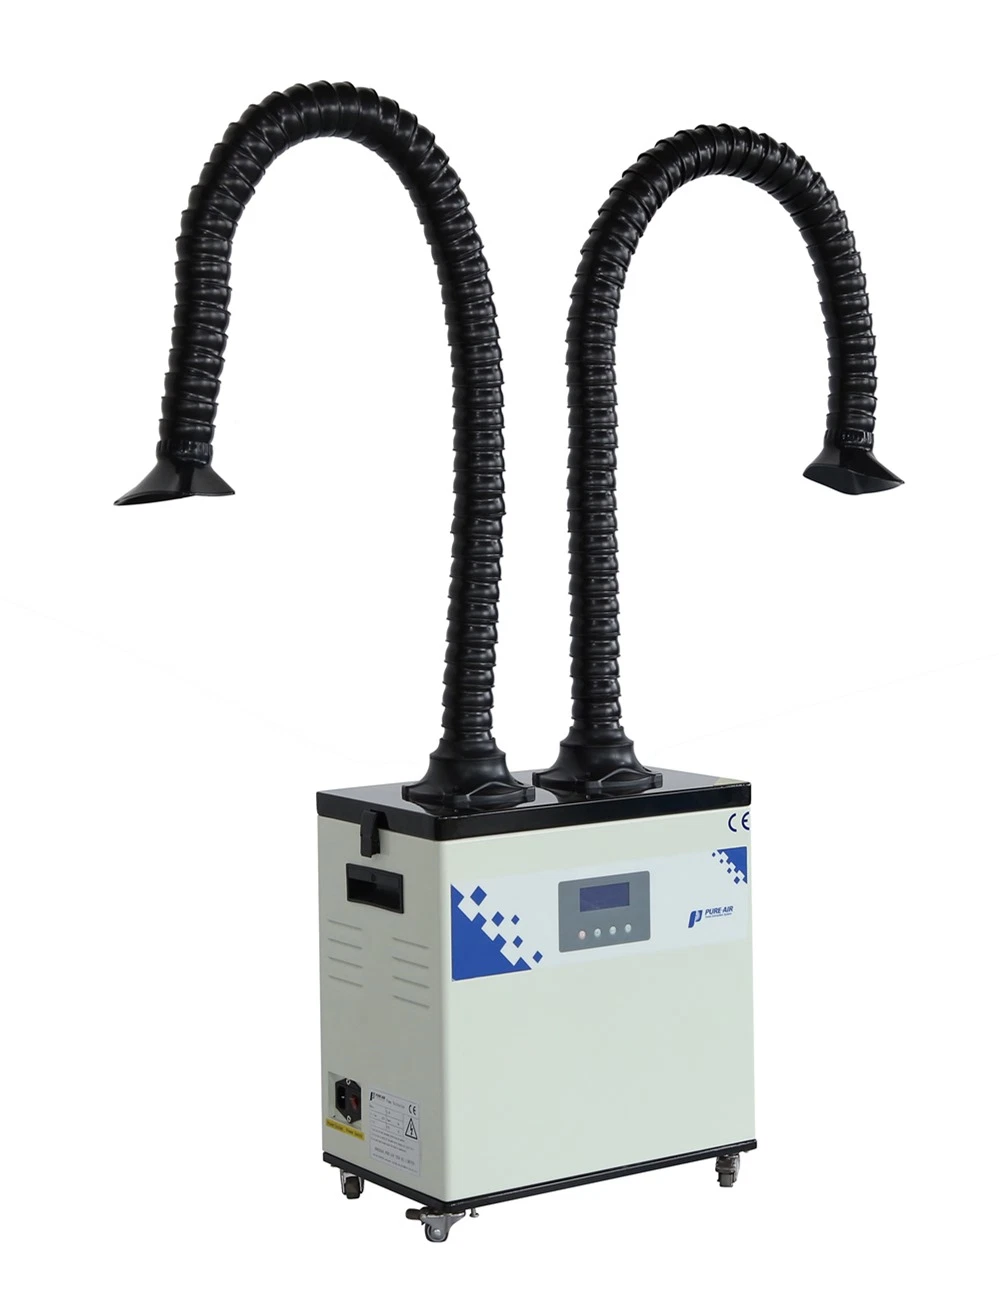 Pure-Air промышленного оборудования для фильтрации и детали для пайки и лазерной печати (PA-300TD-IQ)